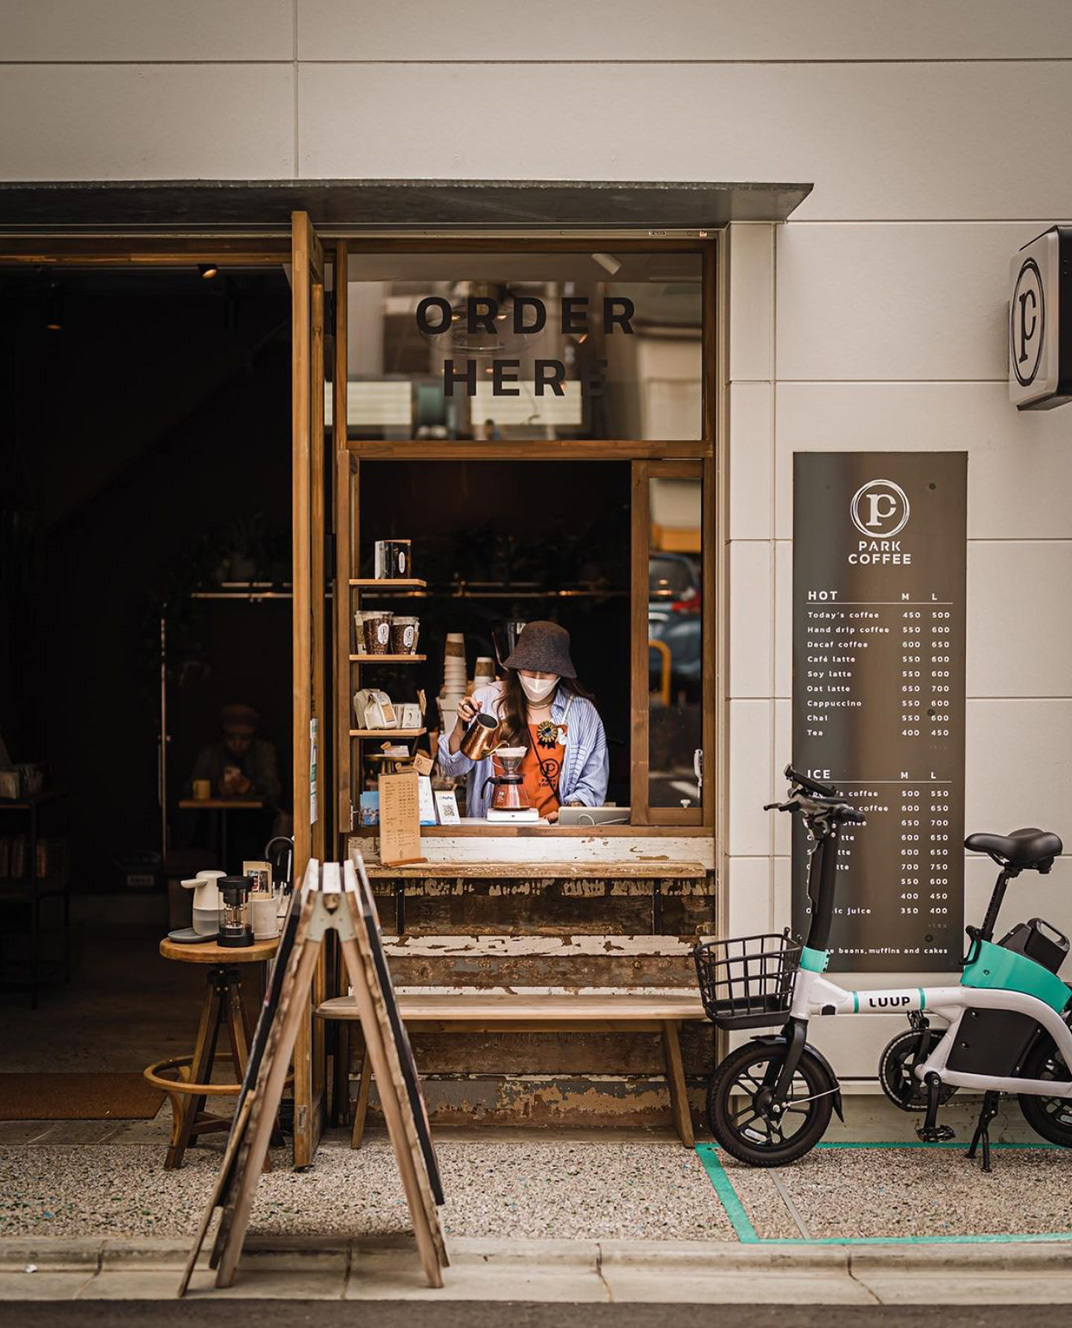 市井风格咖啡店 日本 东京 上海 咖啡店 市井 橱窗 档口 复古 logo设计 vi设计 空间设计